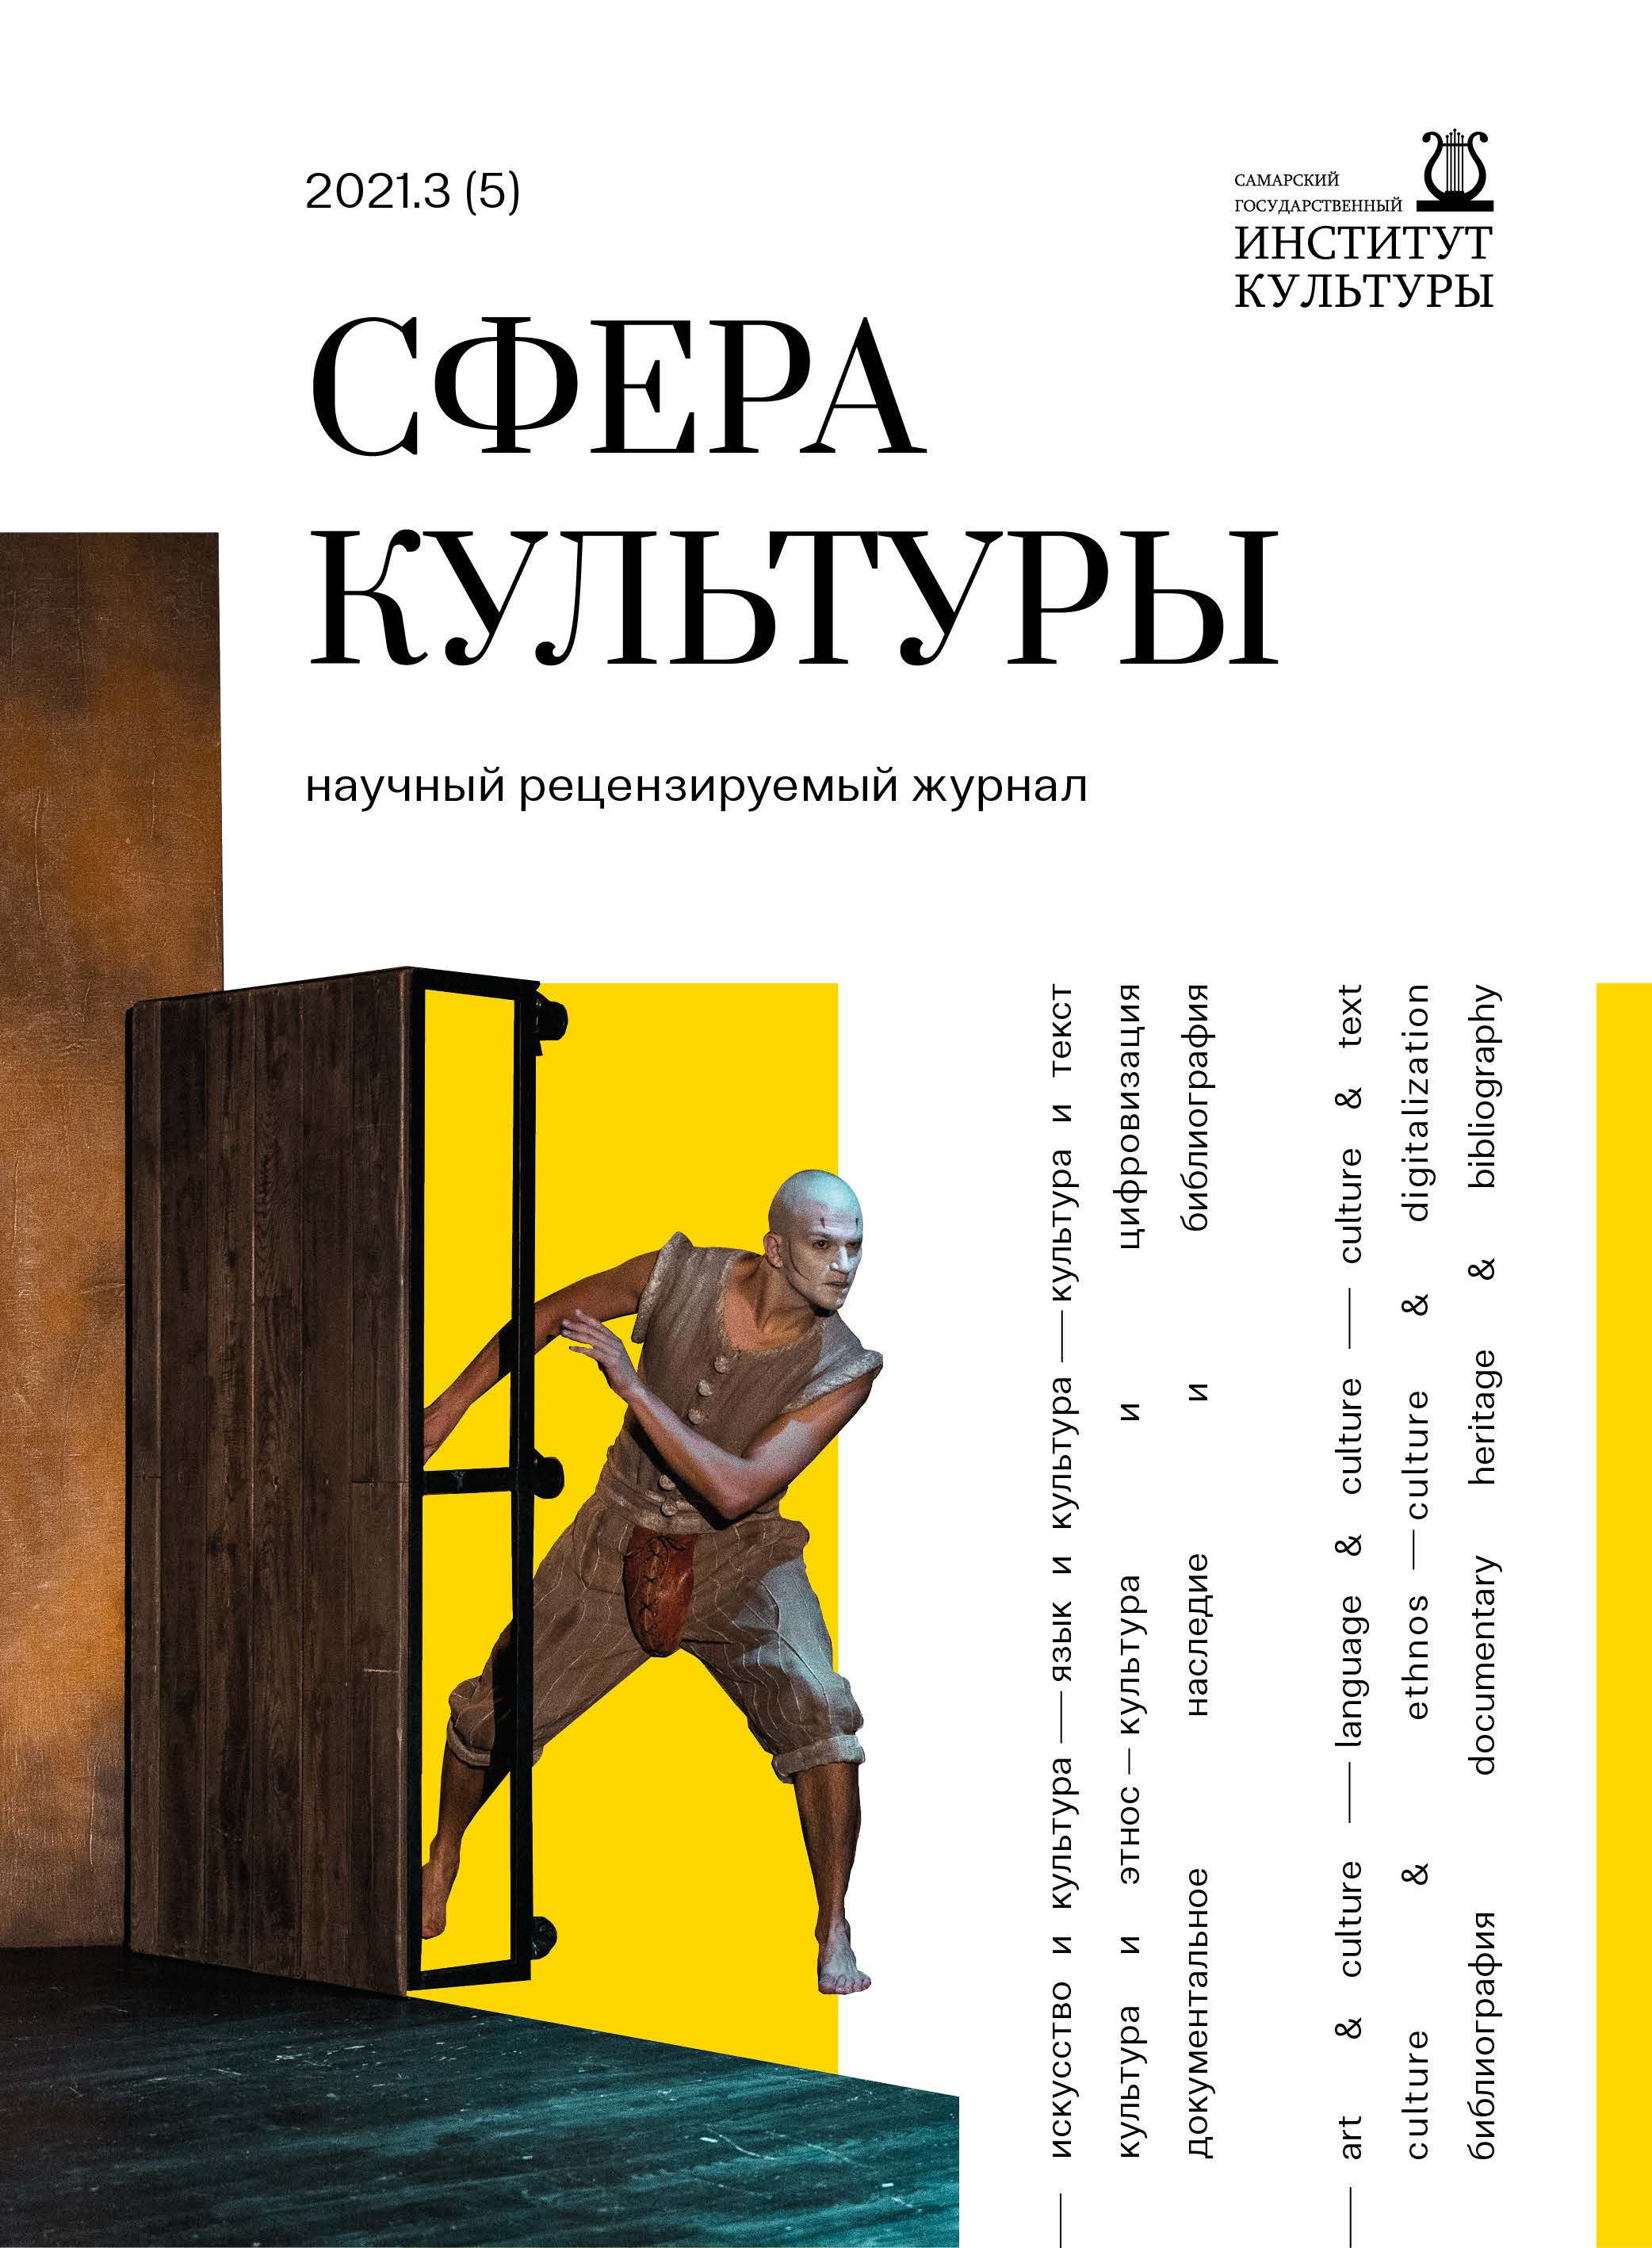 Каталоги книг на русском, украинском, белорусском языках